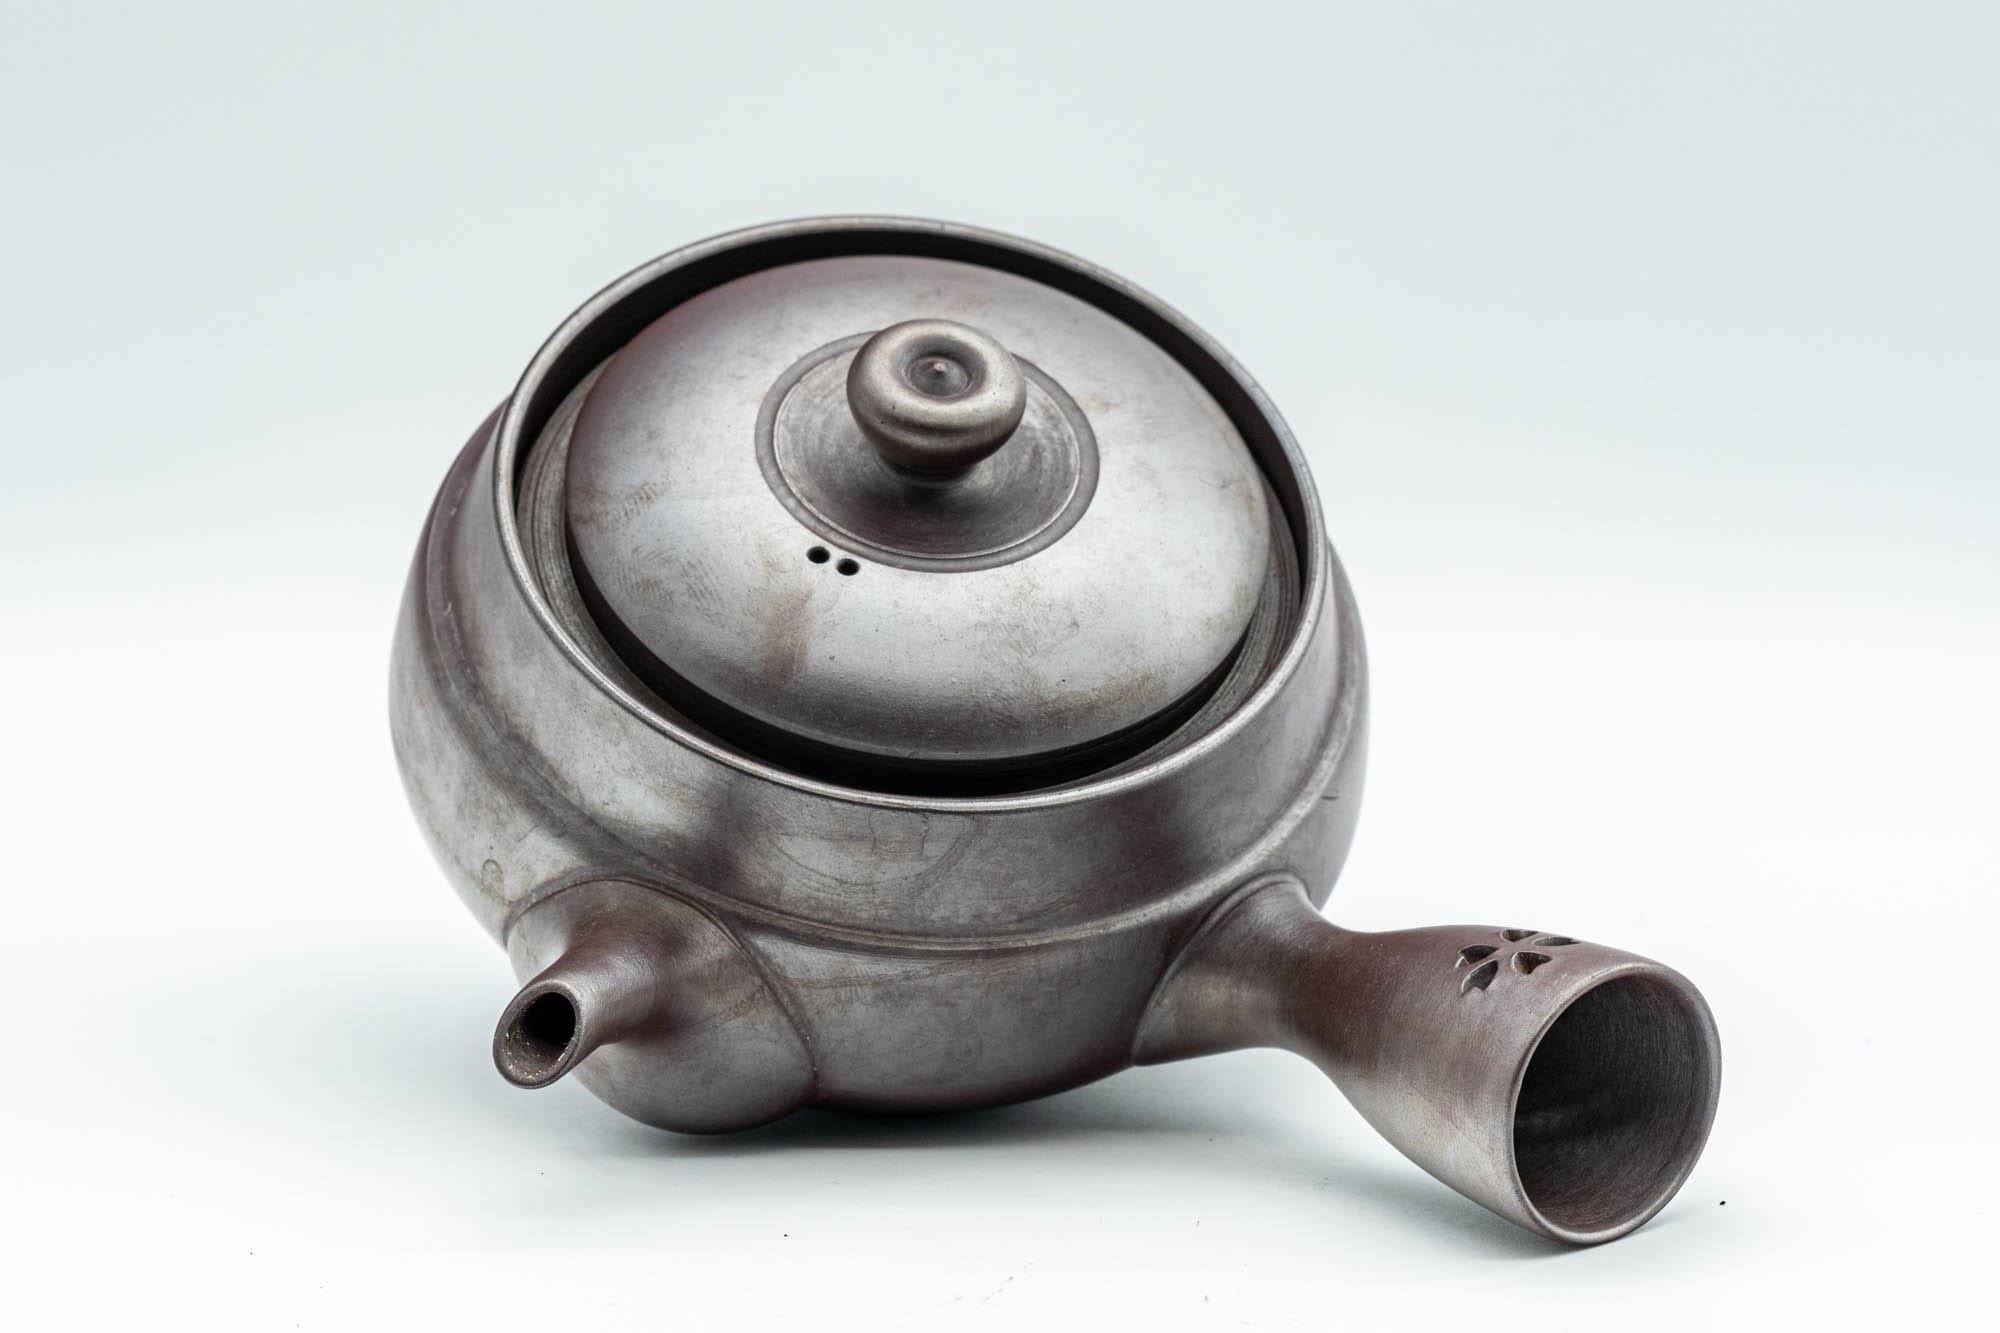 Japanese Kyusu - Sleek Banko-yaki Ceramic Filter Teapot - 200ml - Tezumi